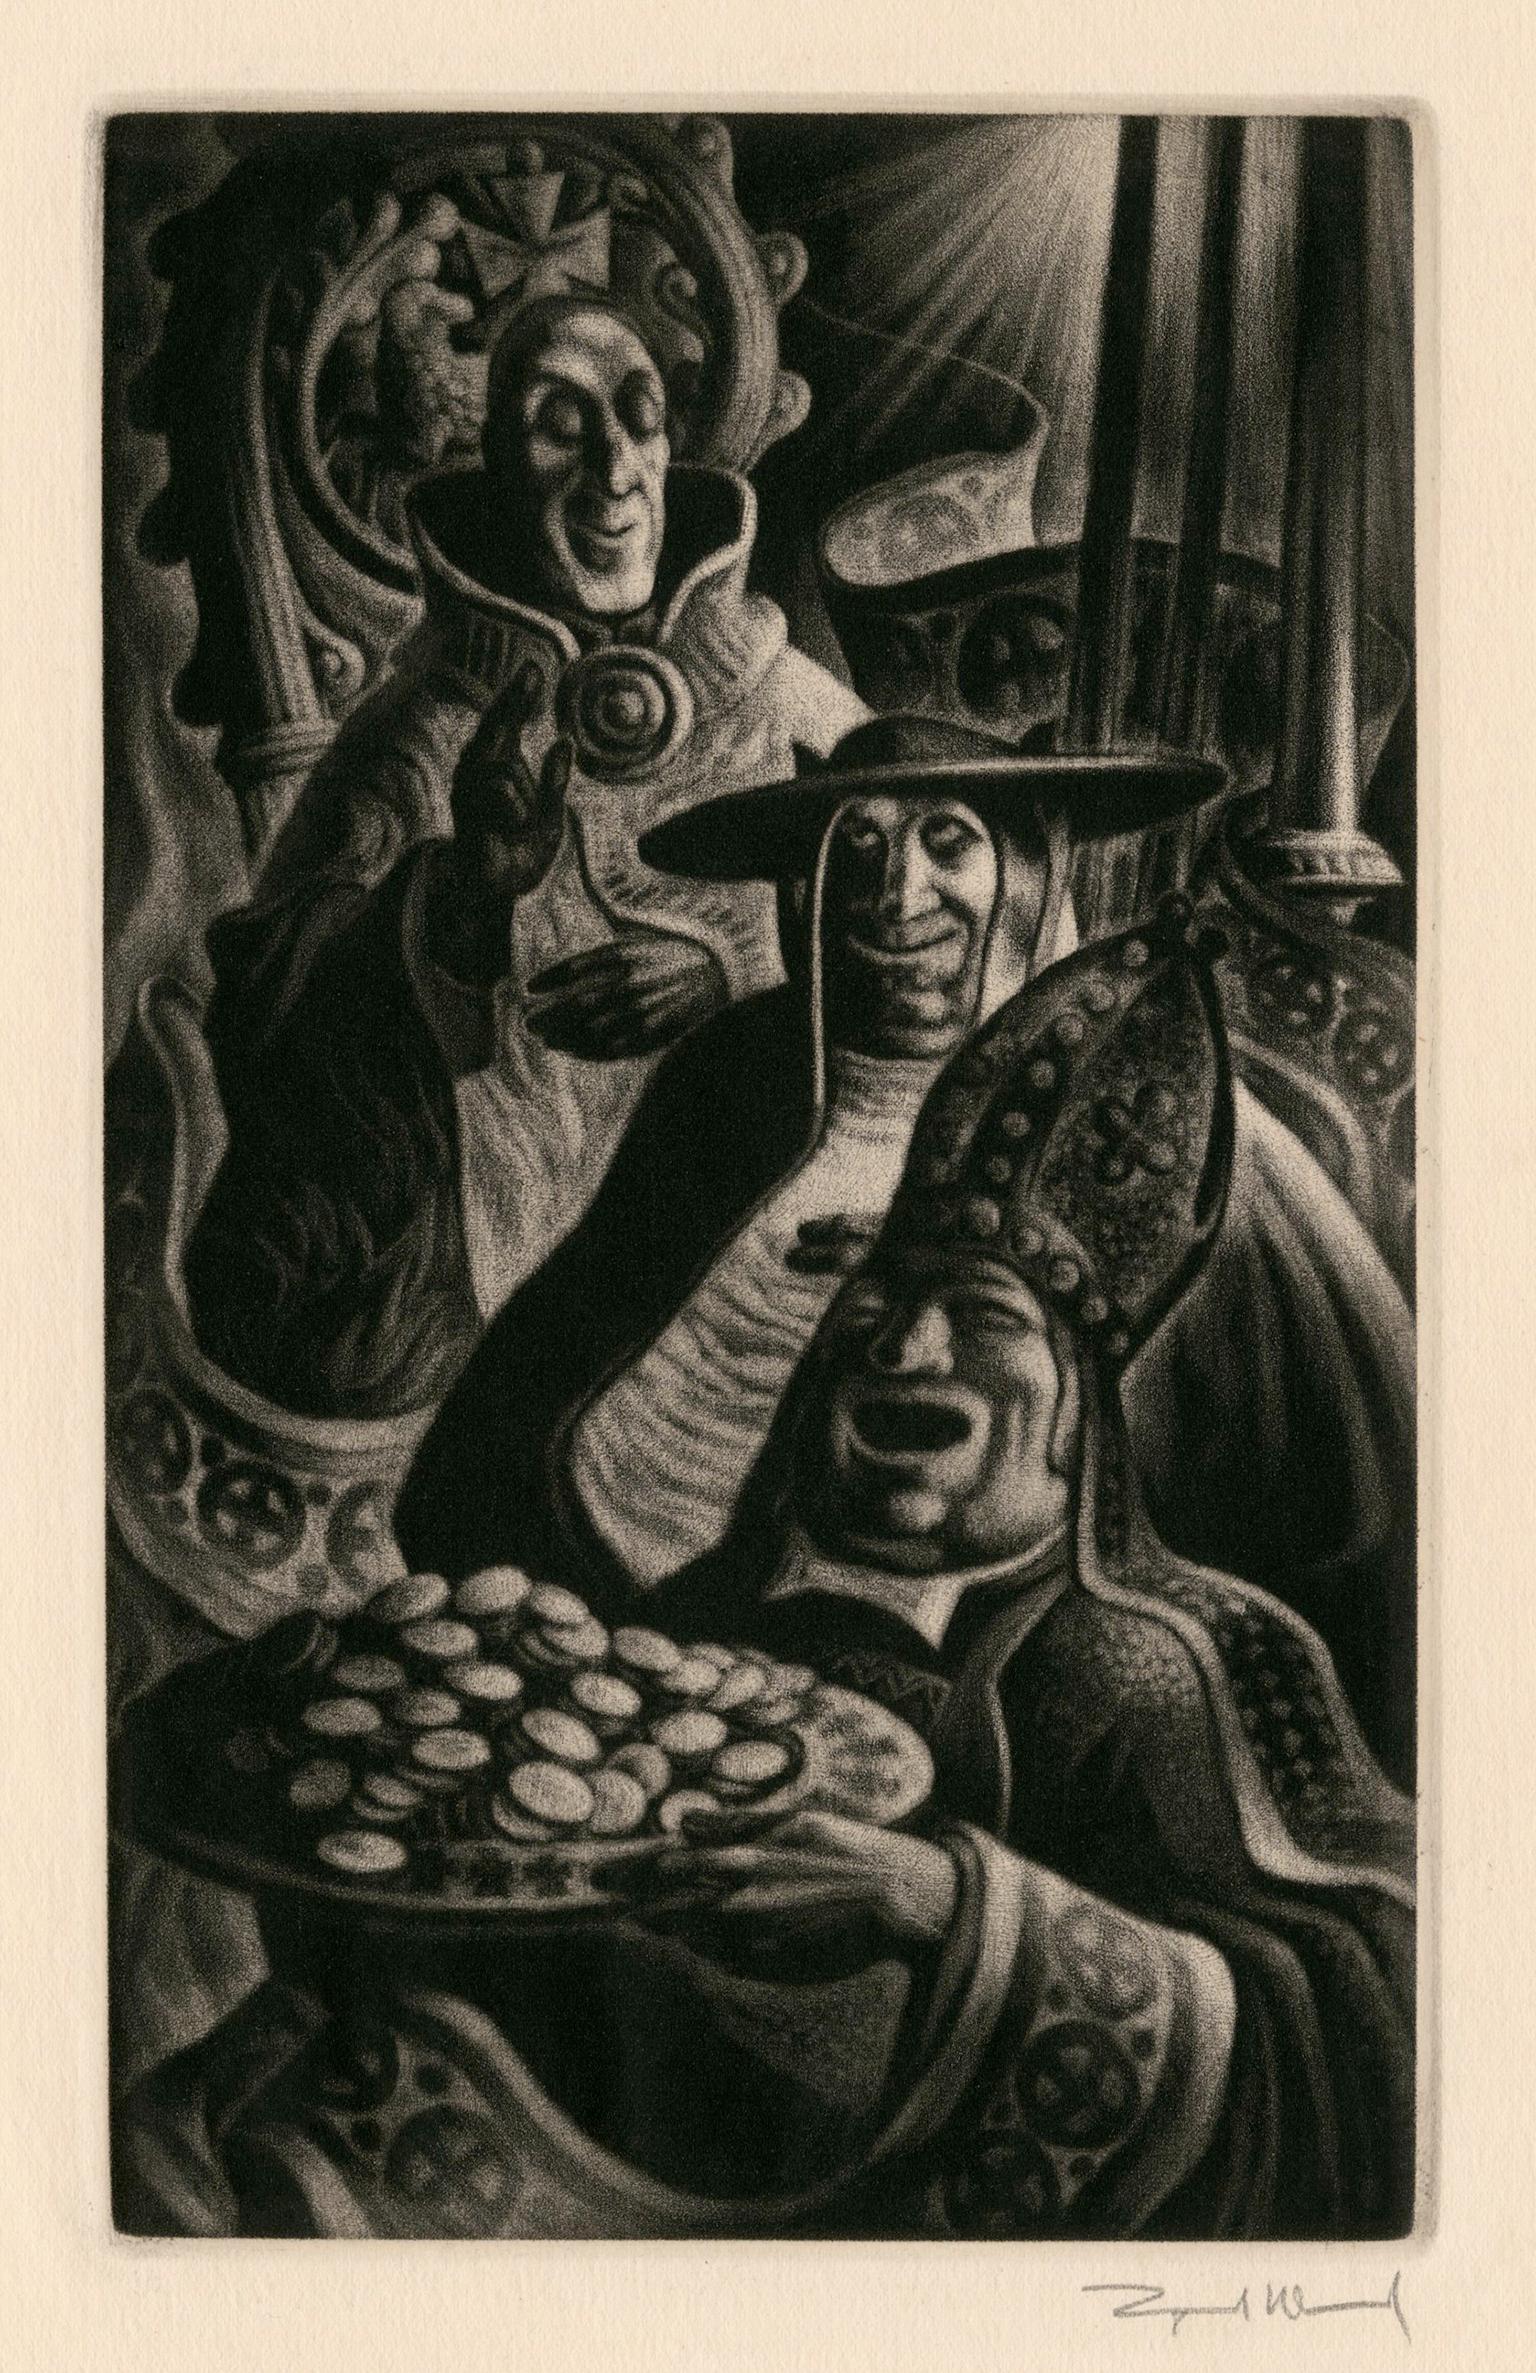 Figurative Print Lynd Ward - Pope", extrait de "In Praise of Folly" (Éloge de la folie) - Modernisme graphique des années 1940